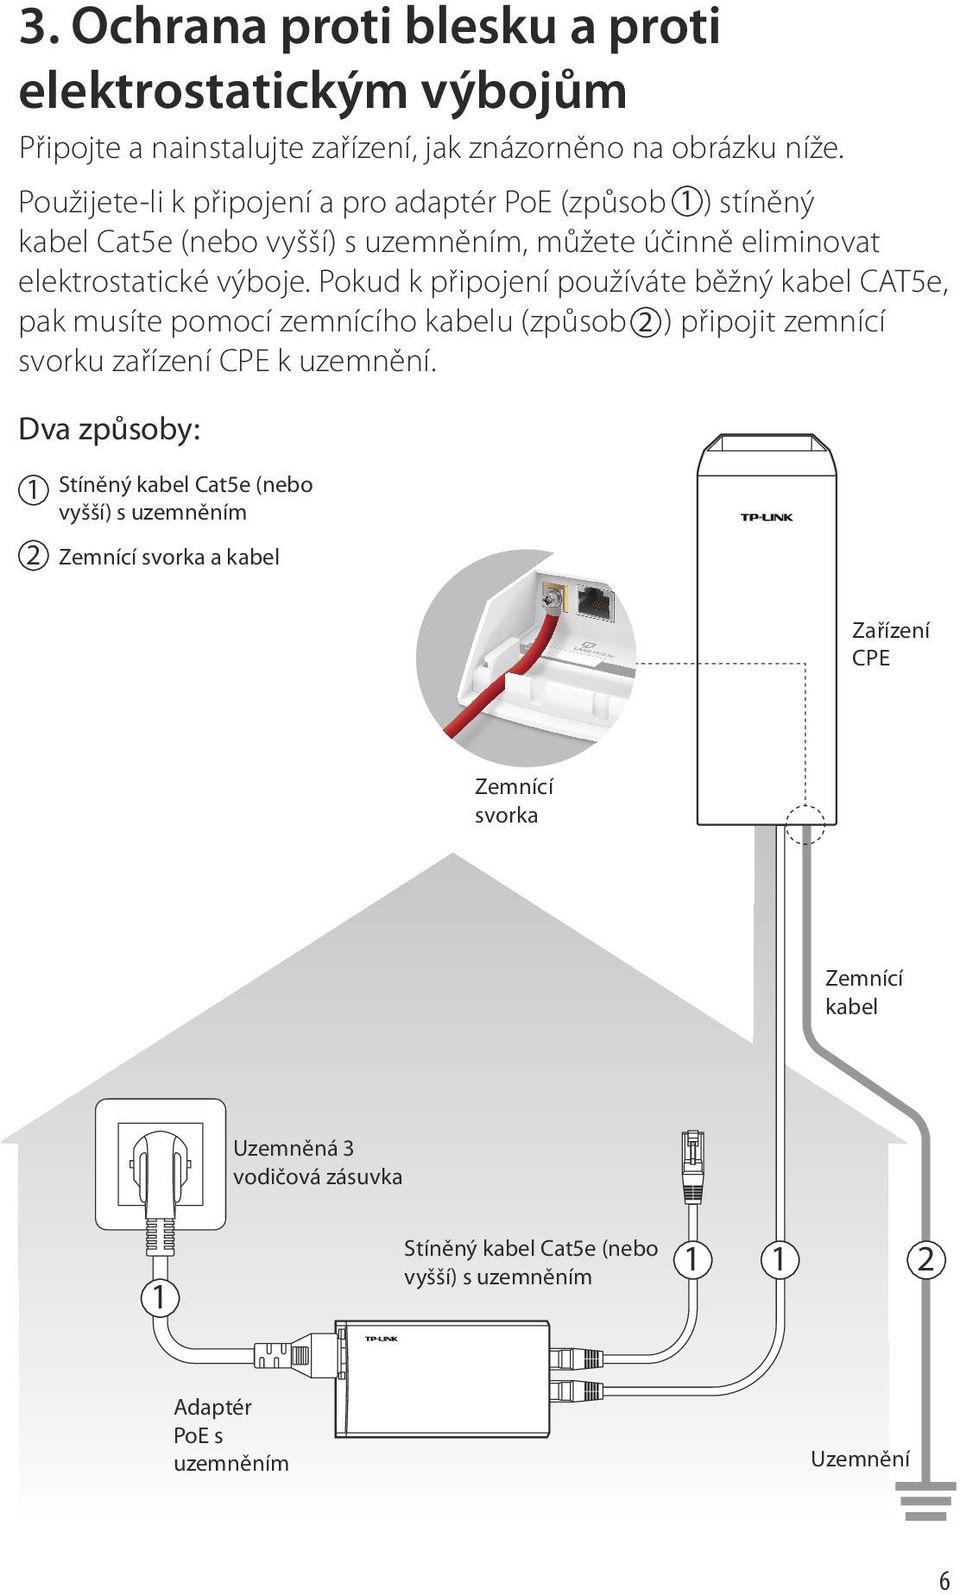 Pokud k připojení používáte běžný kabel CAT5e, pak musíte pomocí zemnícího kabelu (způsob 2 ) připojit zemnící svorku zařízení CPE k uzemnění.